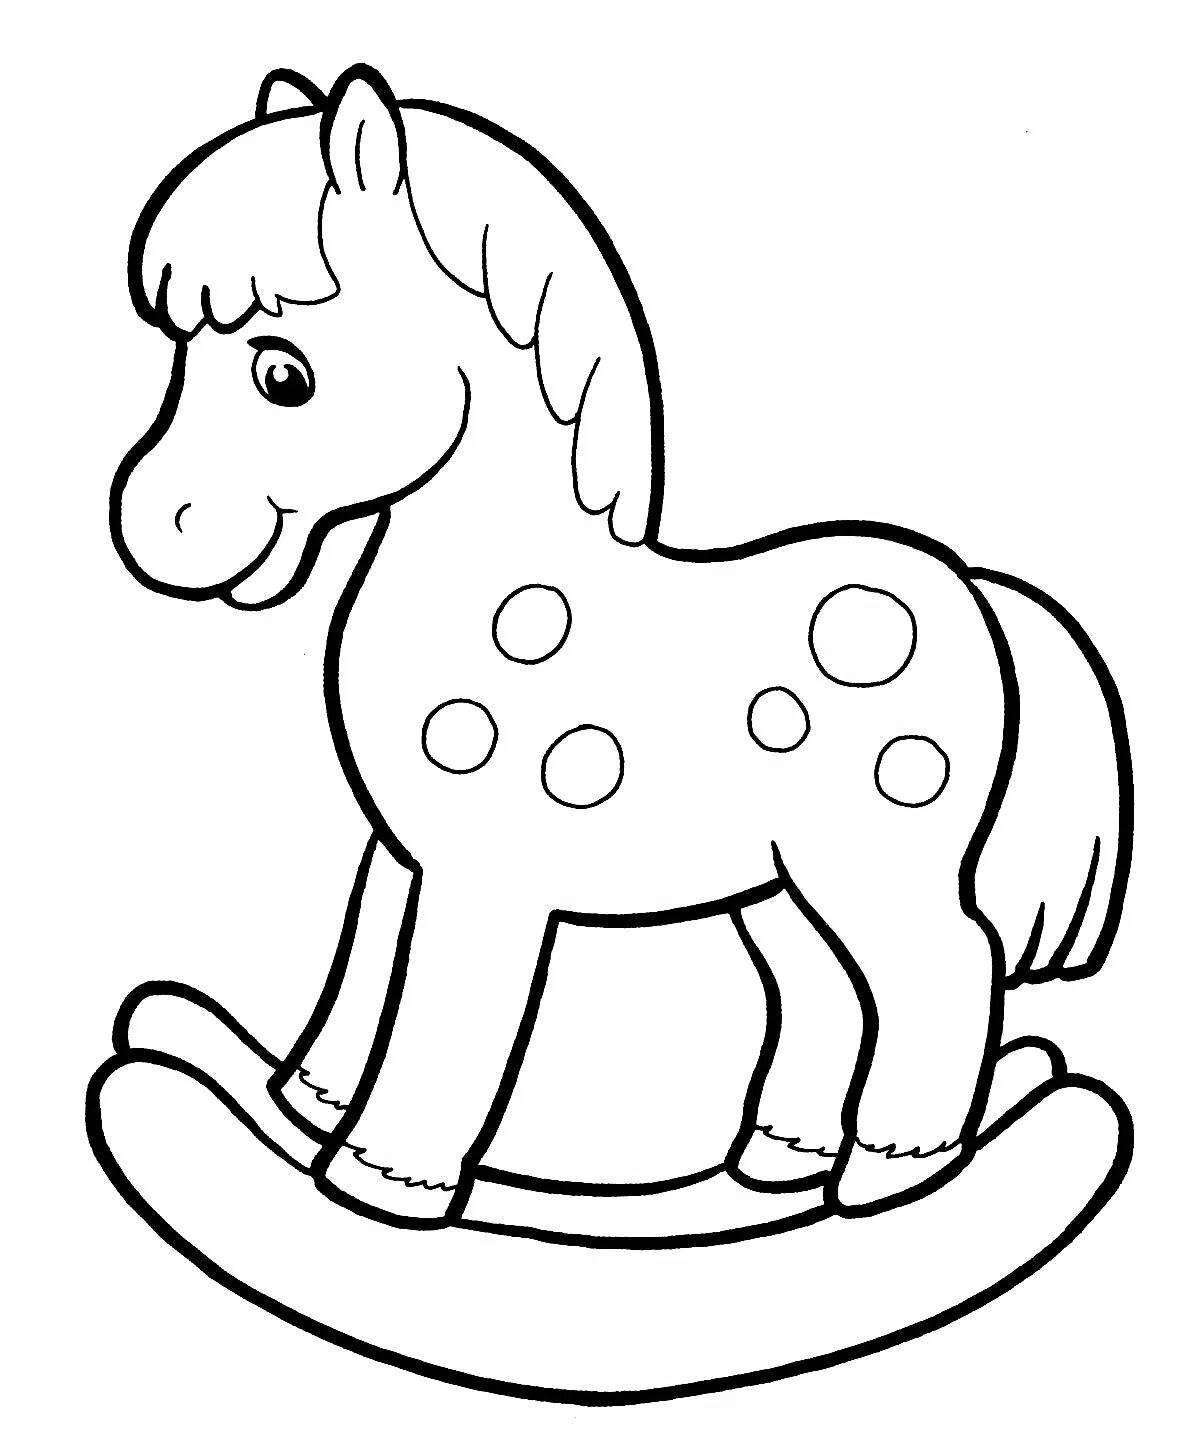 Величественная раскраска лошадь для детей 4-5 лет